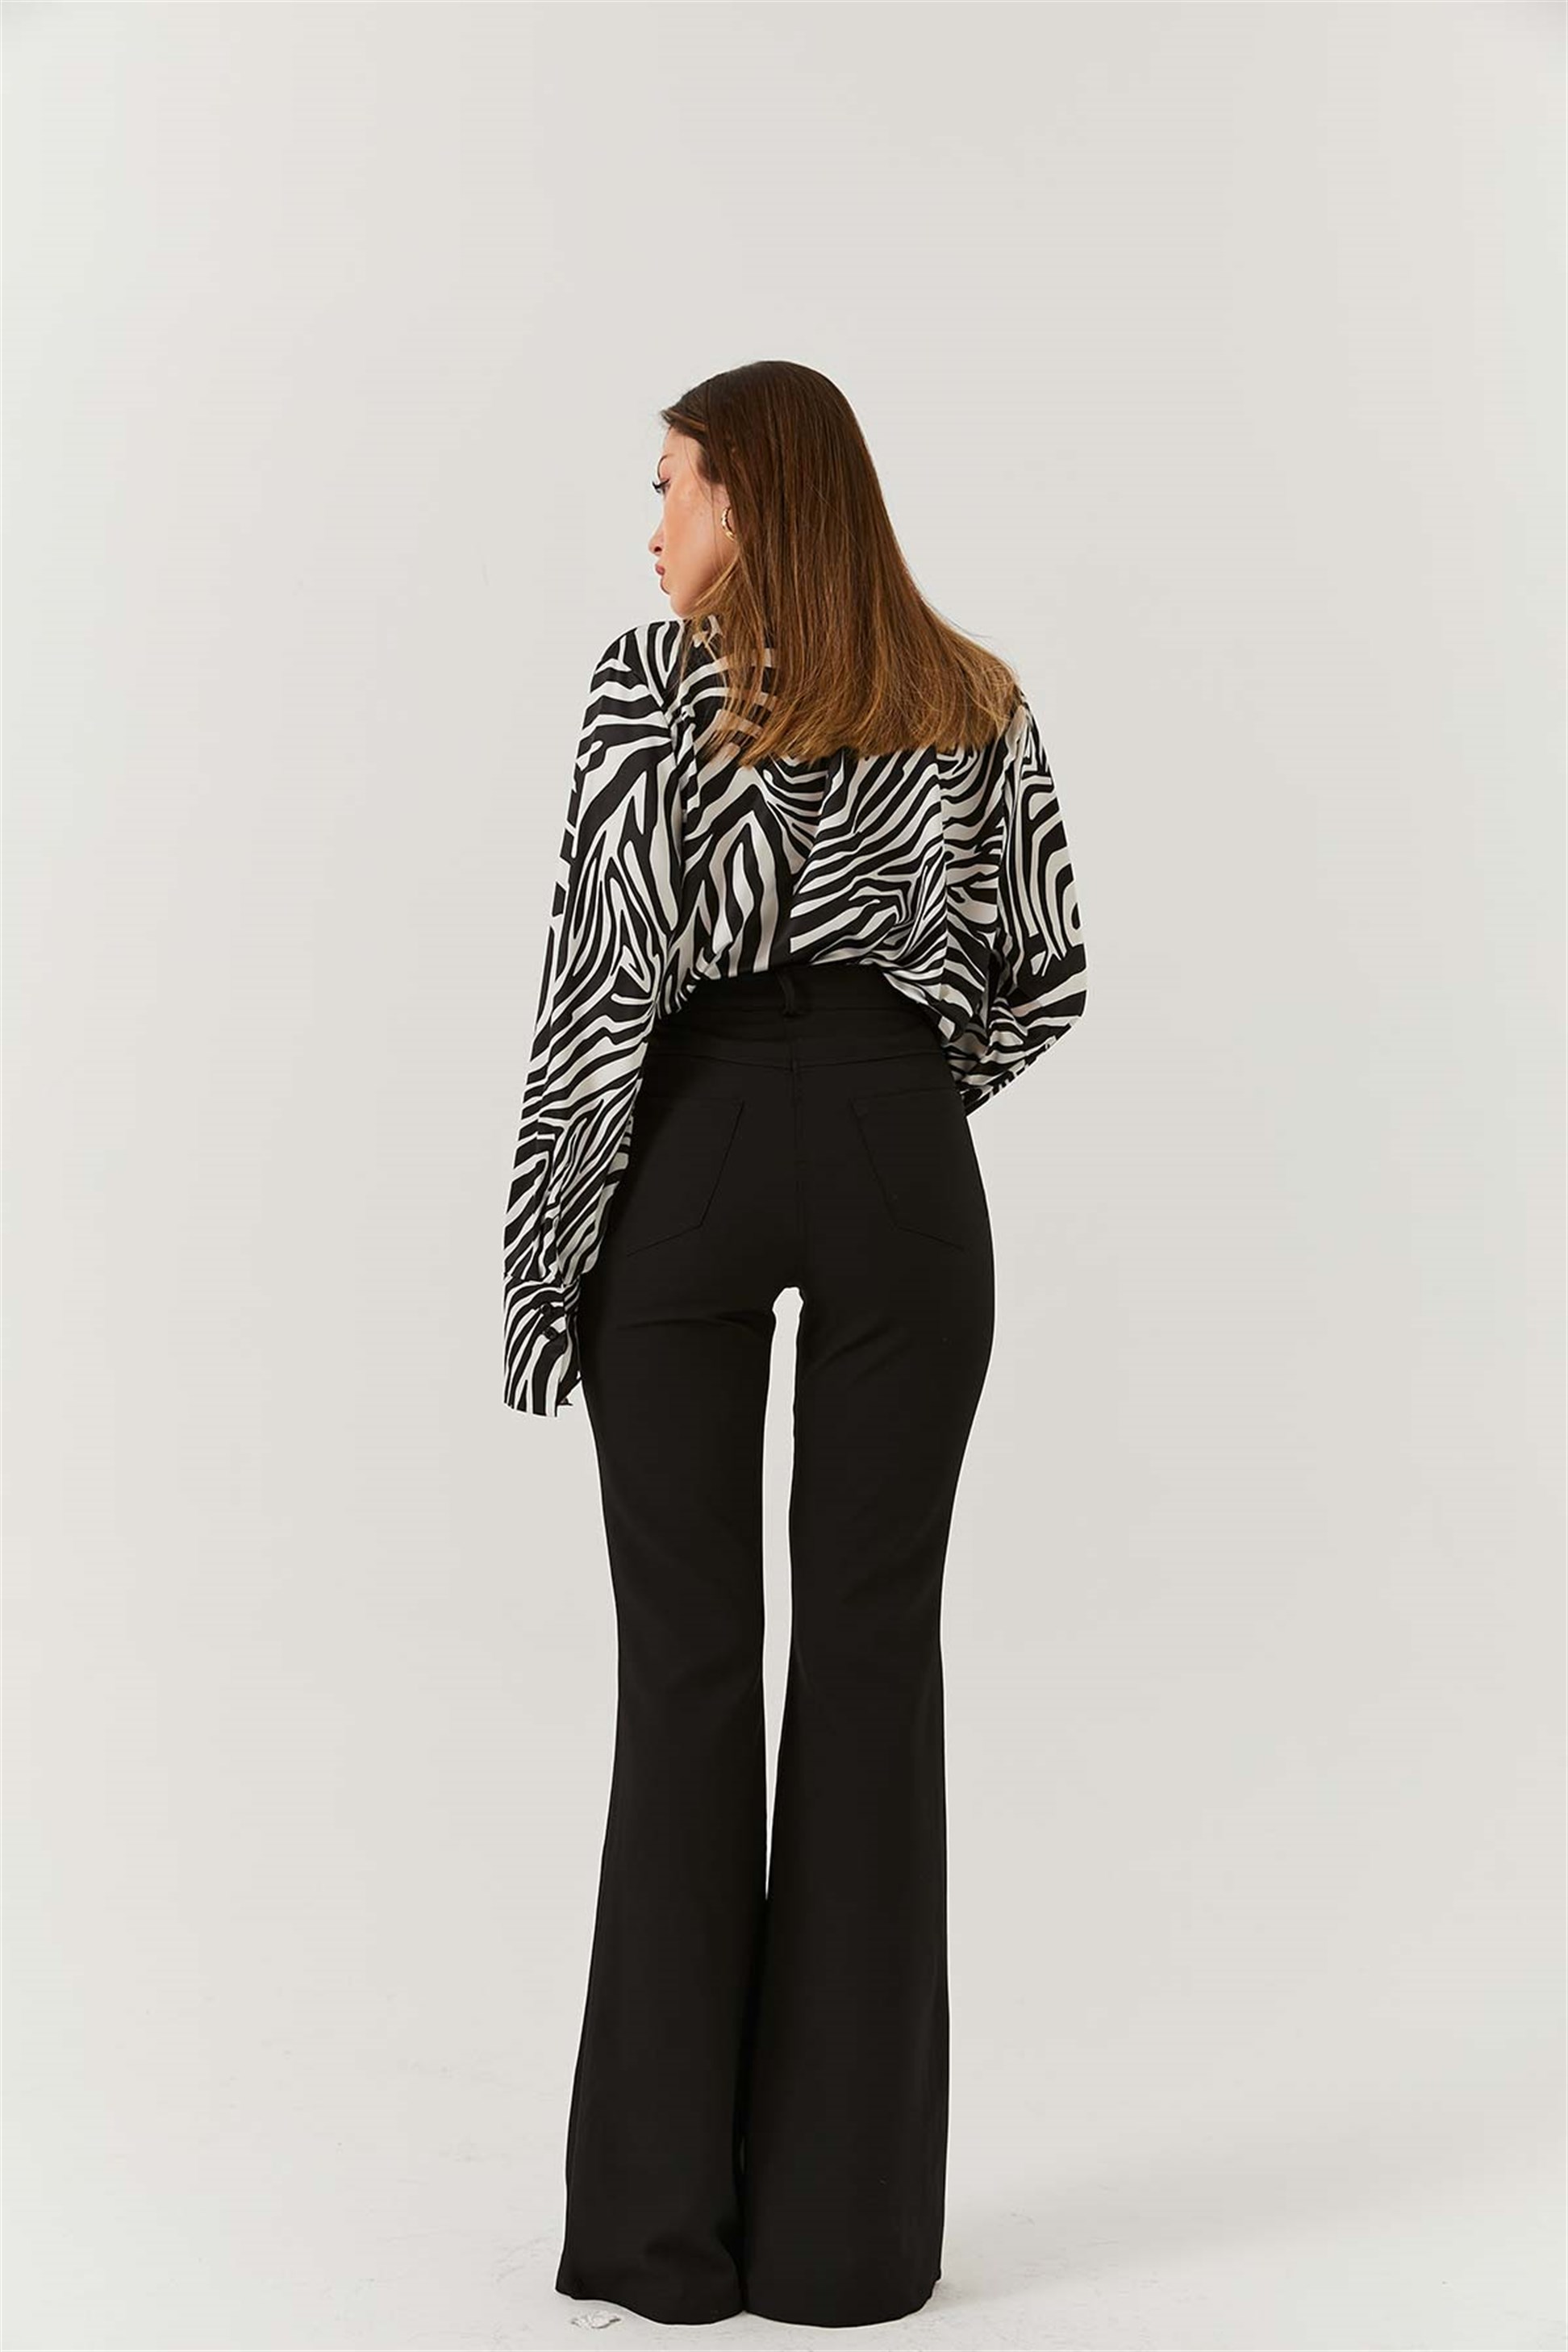 Black XS Bershka slacks WOMEN FASHION Trousers Slacks Leatherette discount 54% 